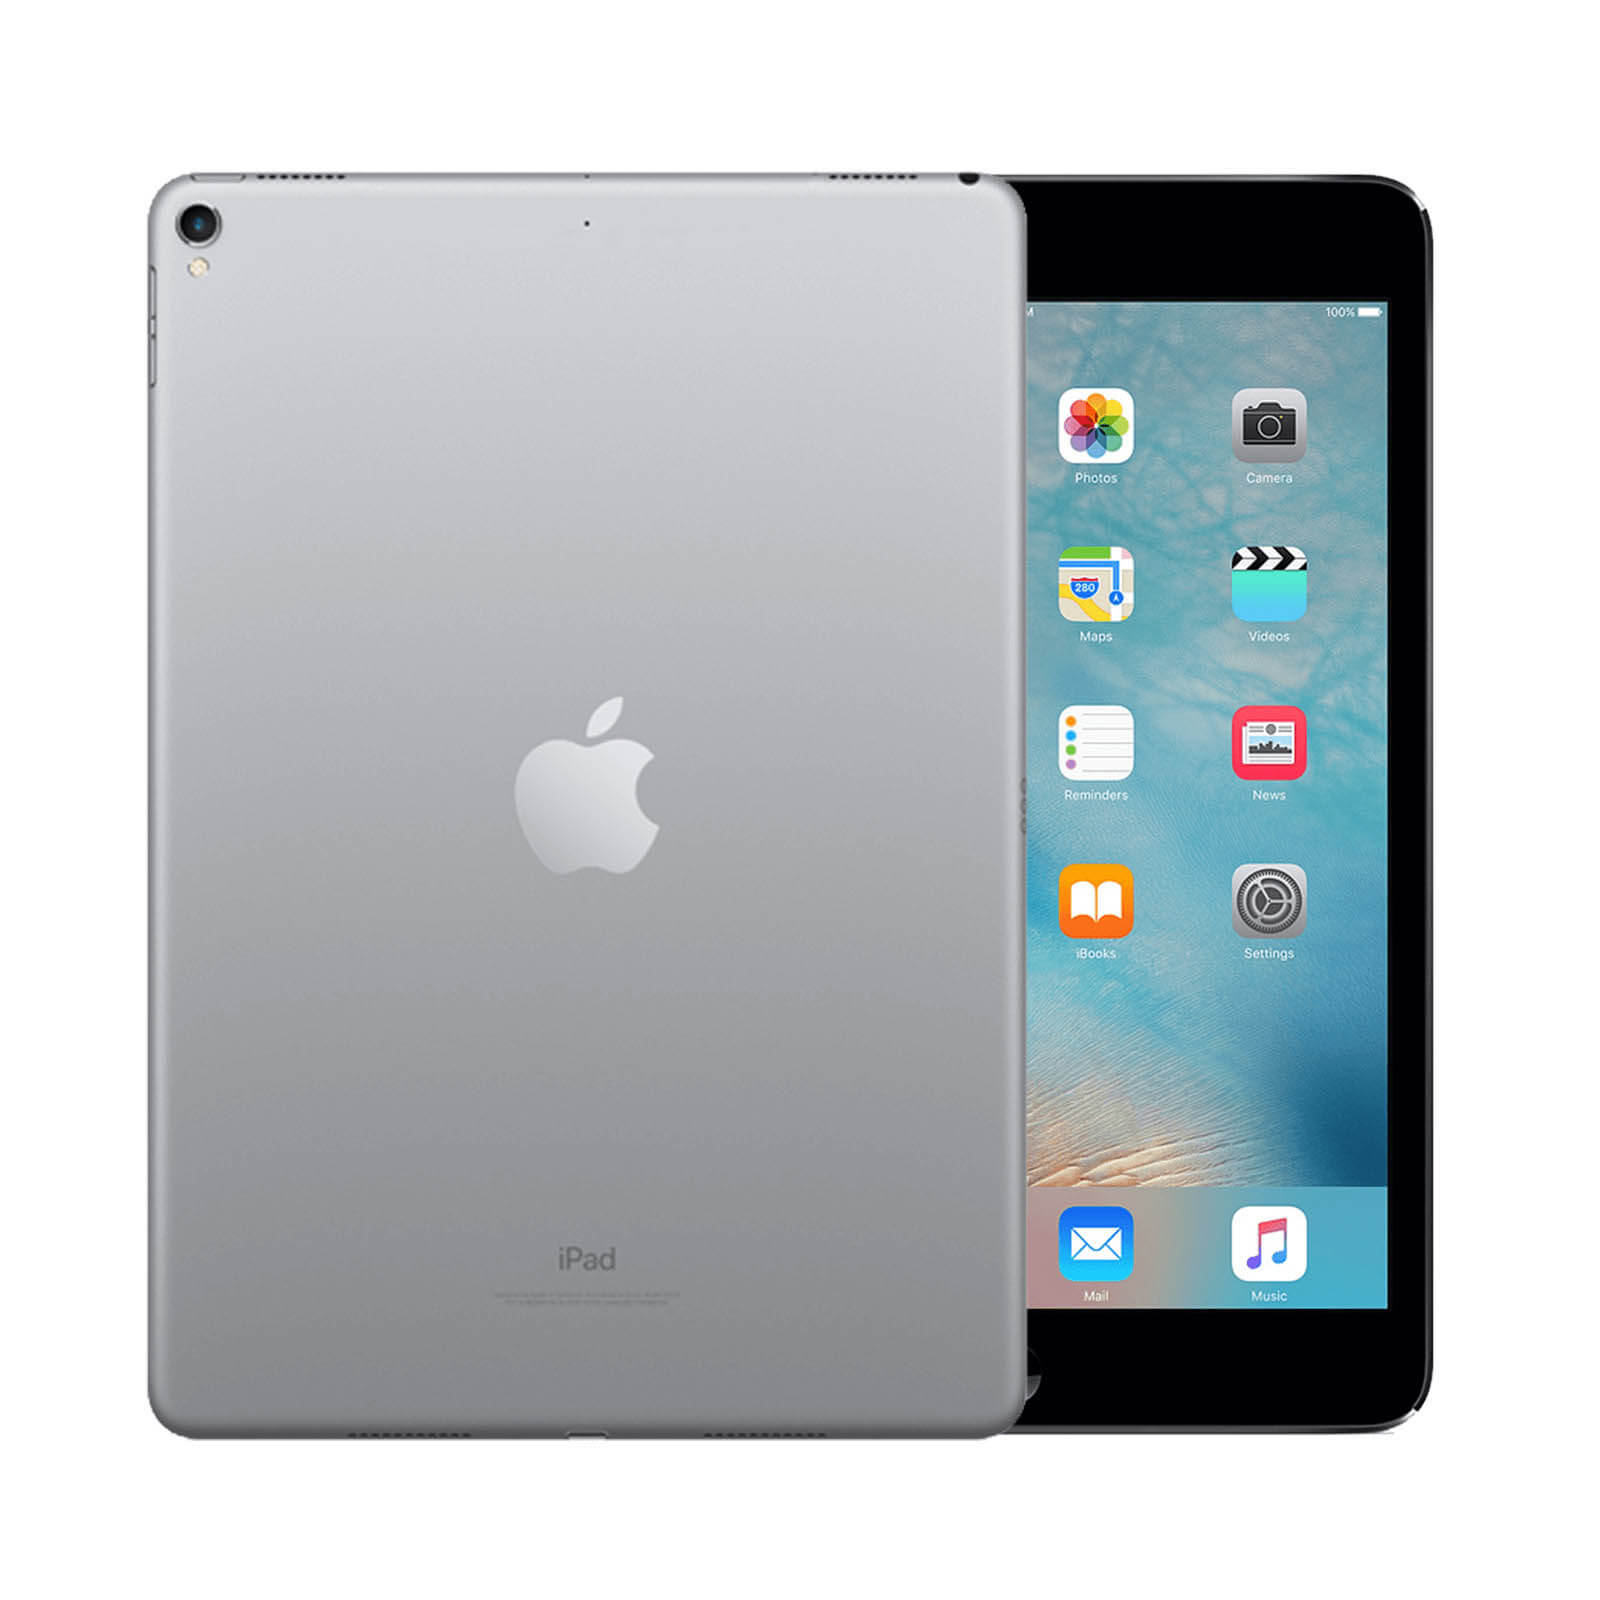 iPad Pro 9.7 Inch 128GB Space Grey Fair - WiFi